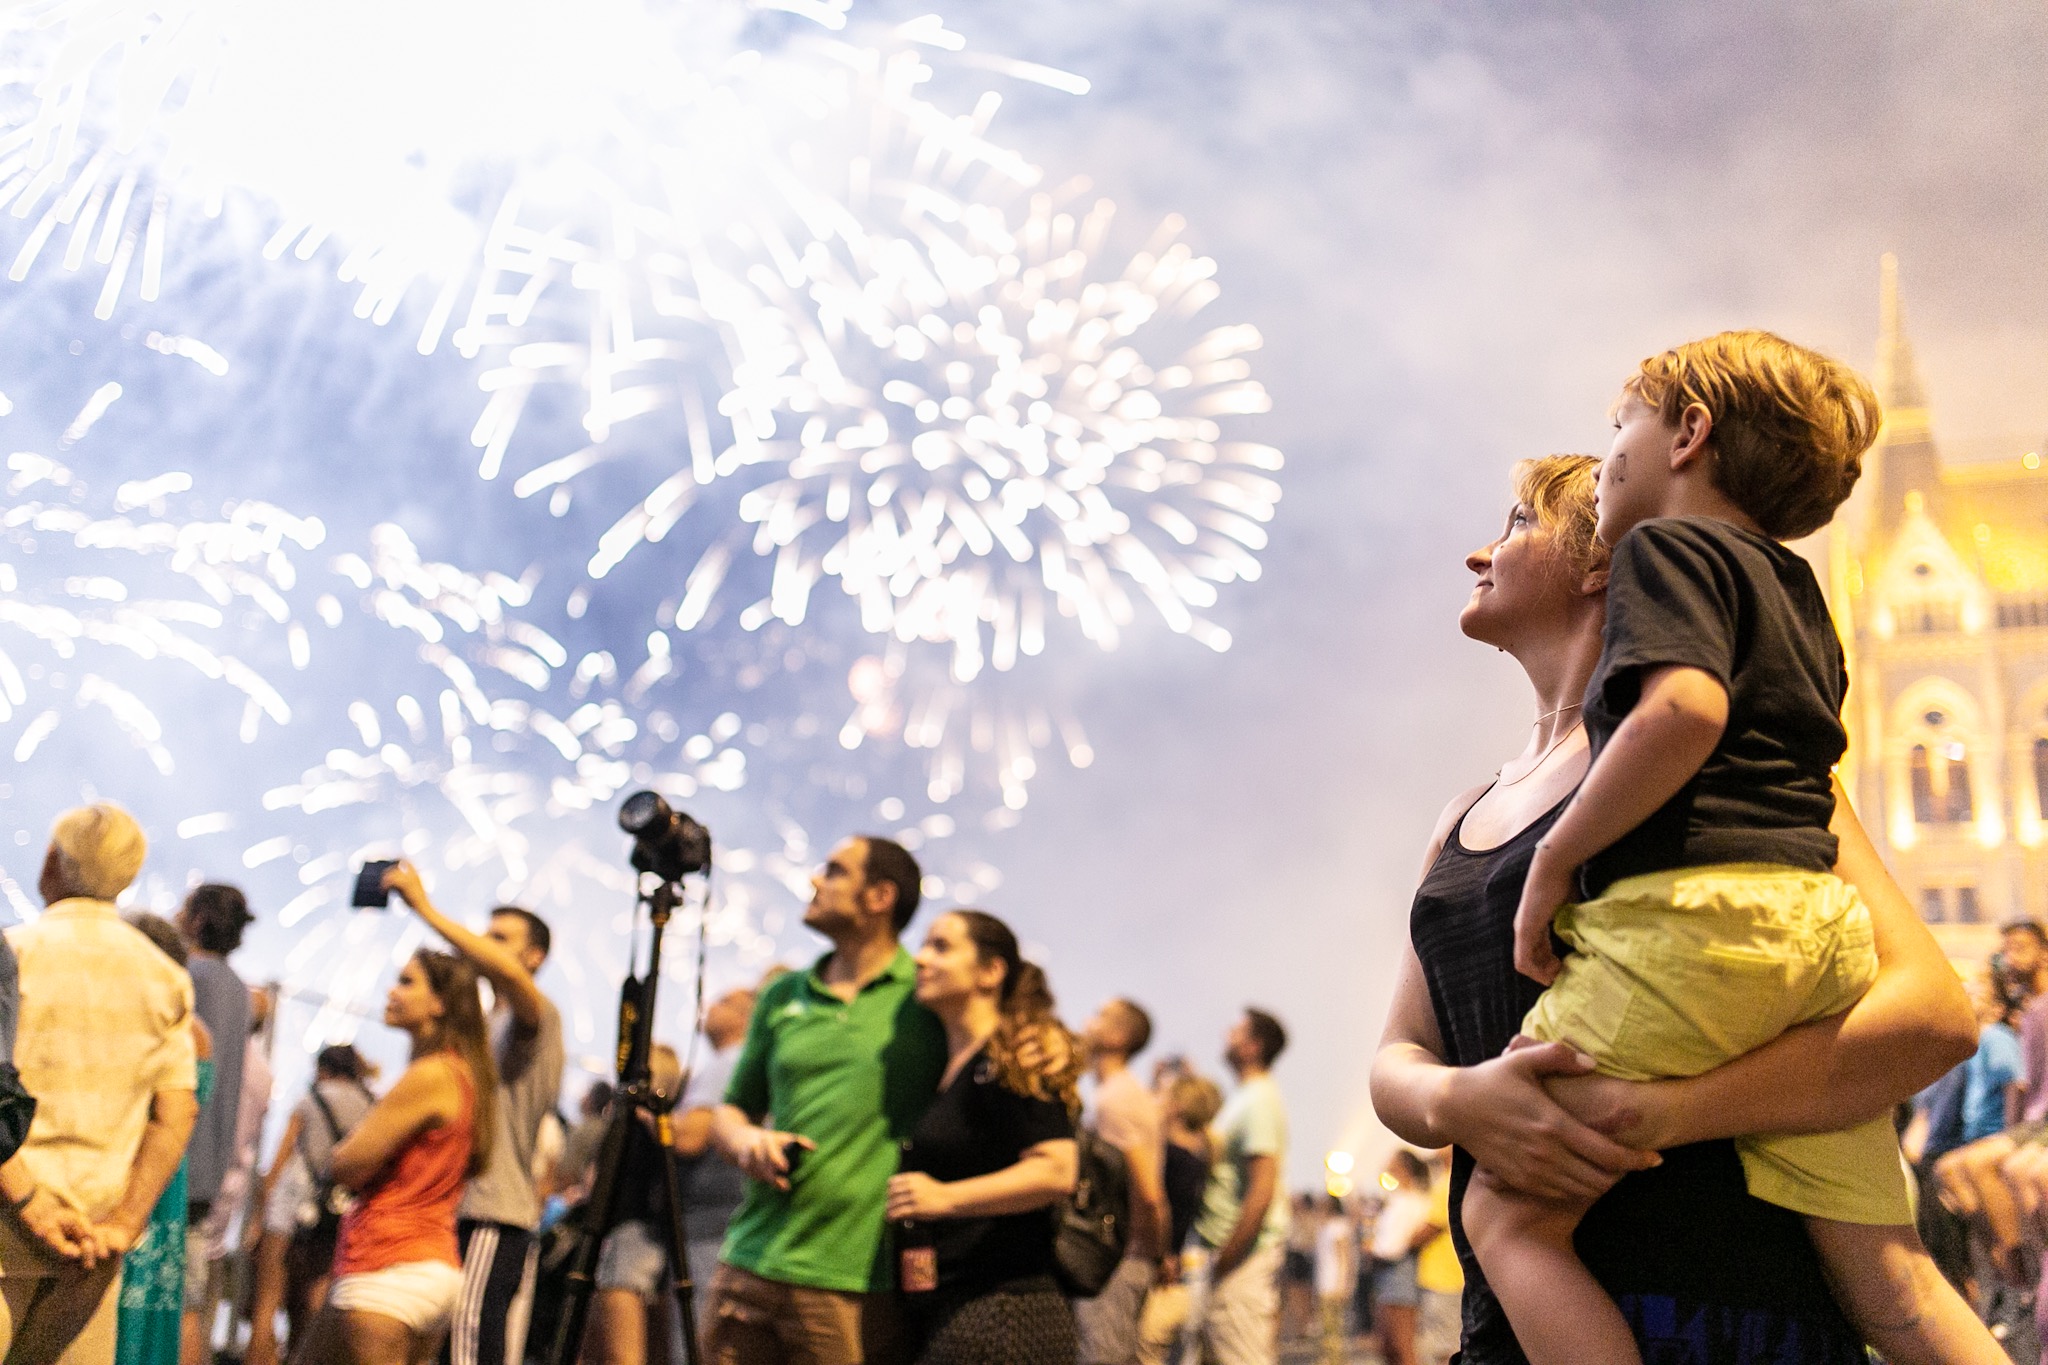 25 hely Budapesten, ahonnan élvezheted az augusztus 20-ai tűzijátékot